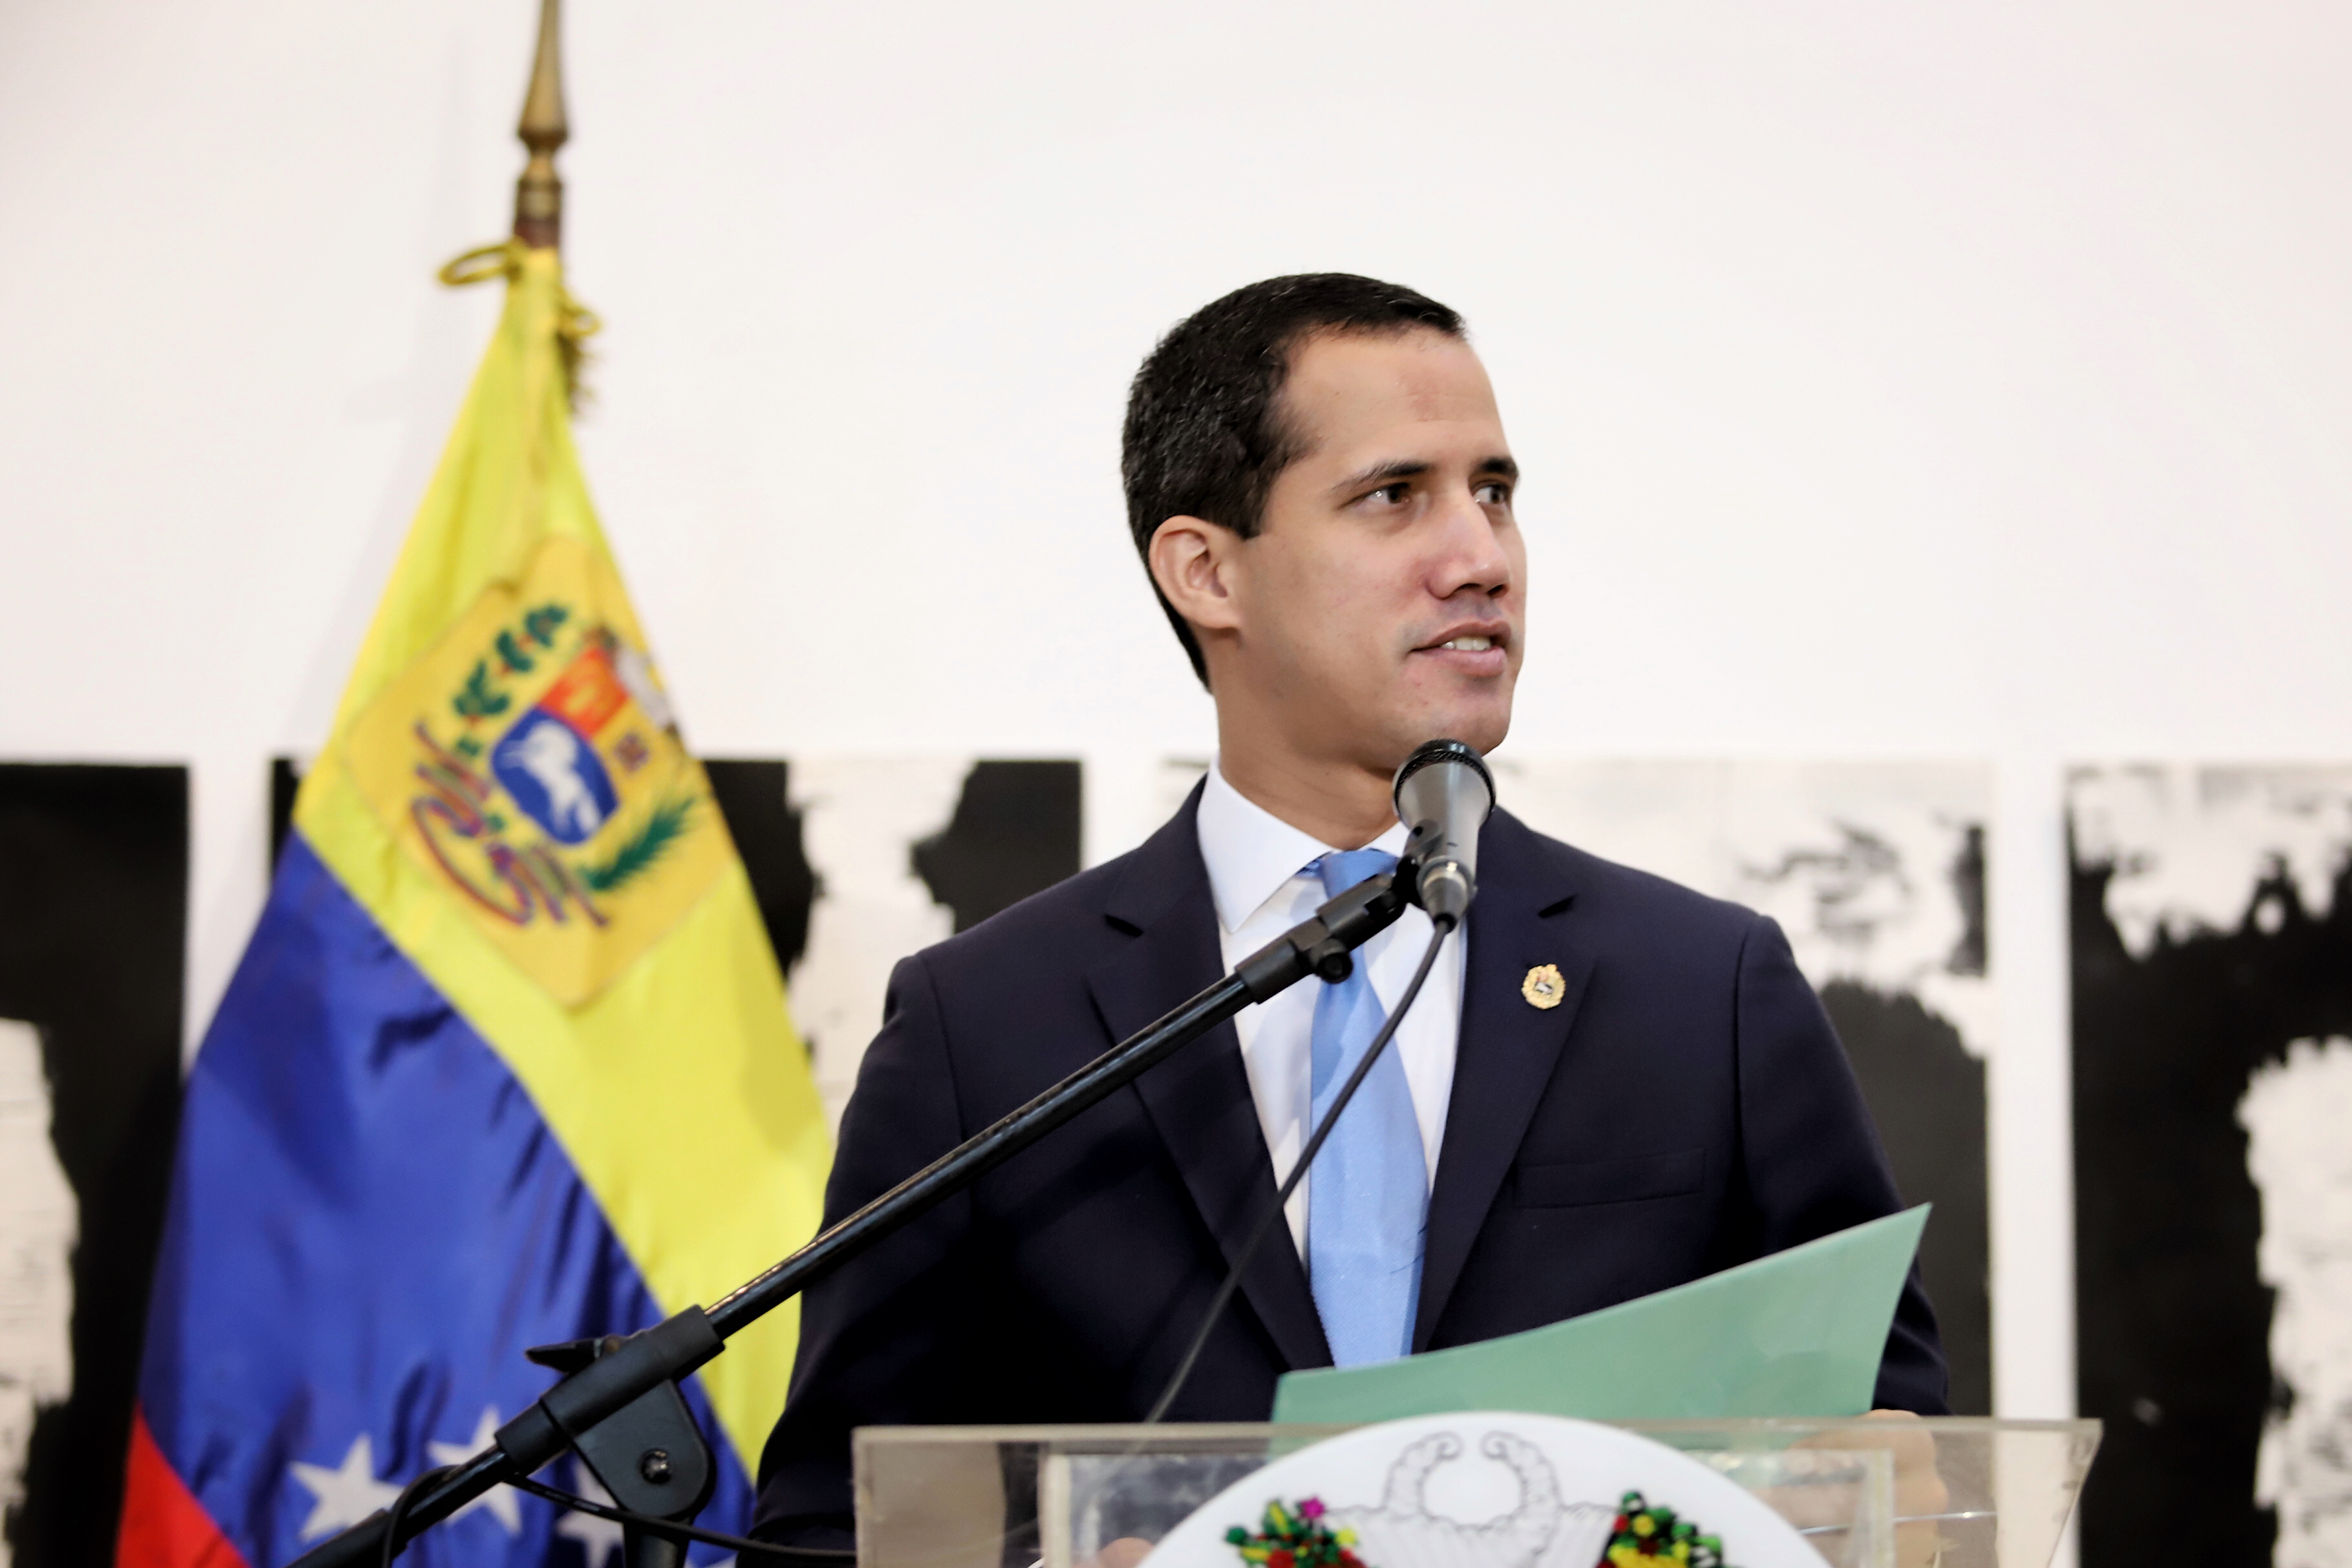 Maduro quiere sembrar dudas sobre el reconocimiento y legitimidad de Guaidó, dice Andrés Velásquez